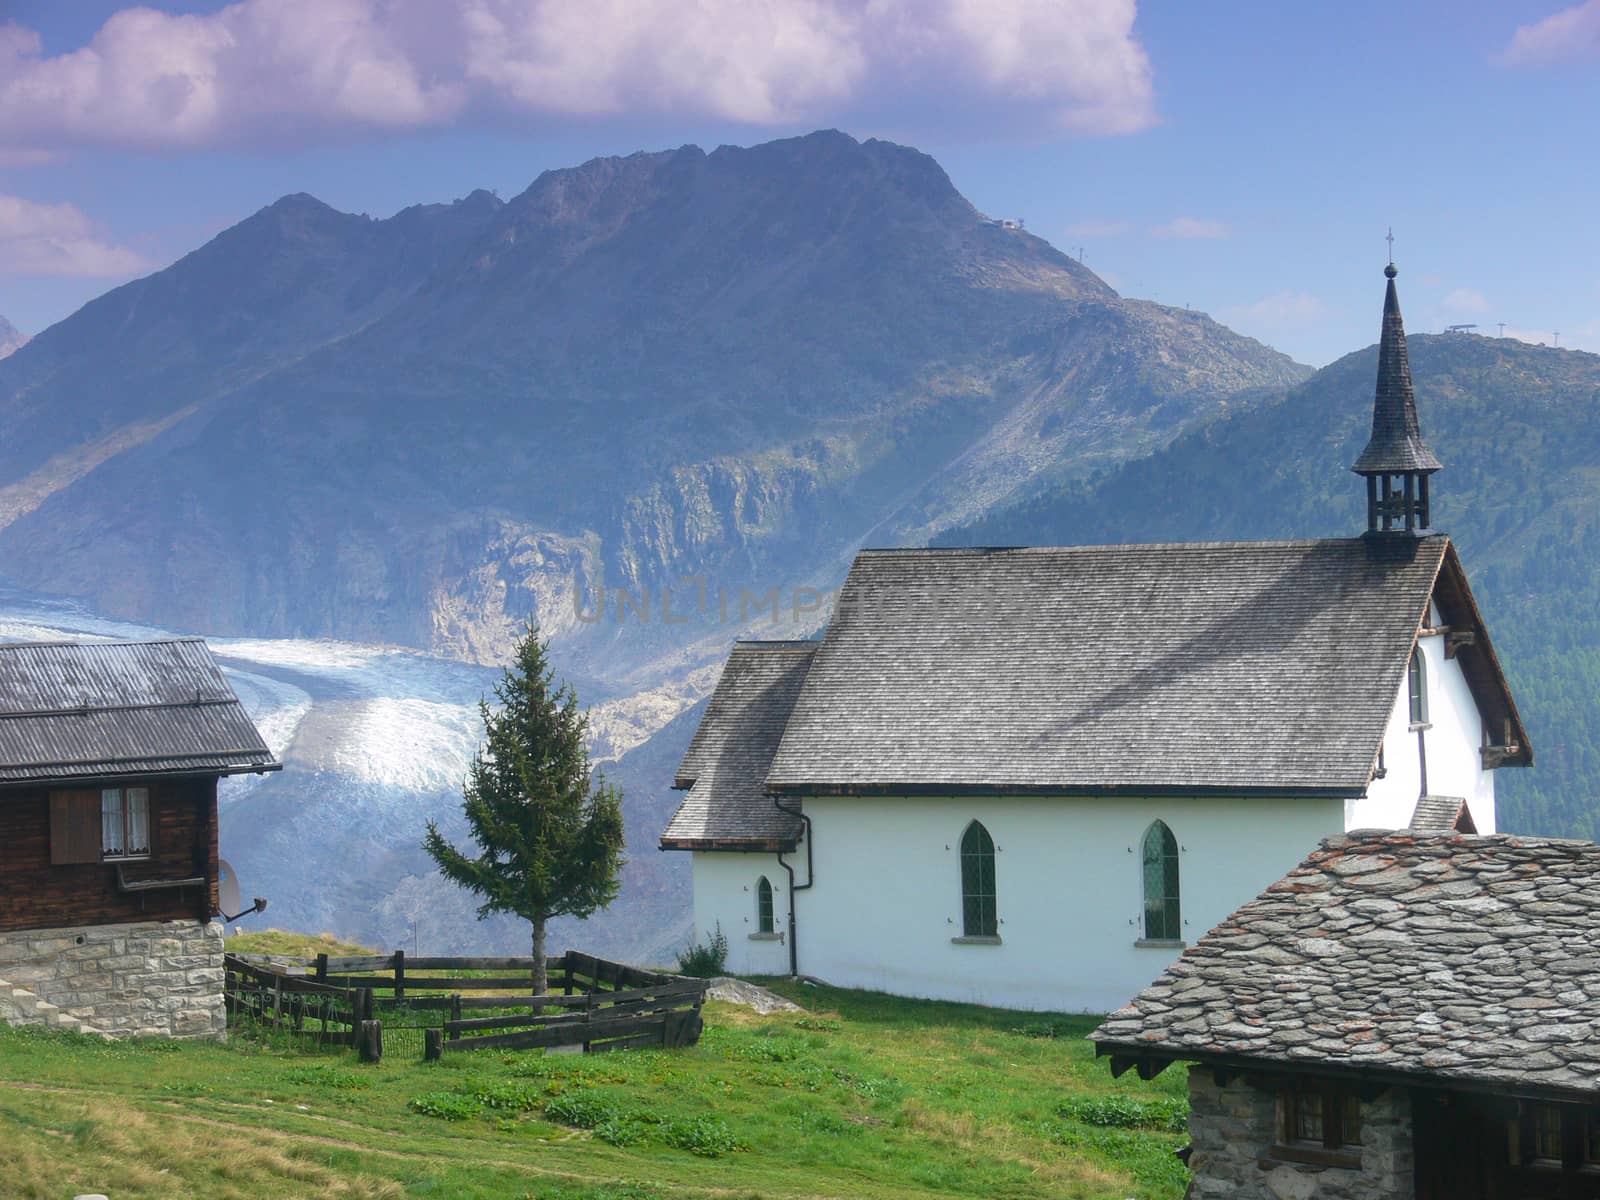 Chapel in Swiss Alps by bertrand